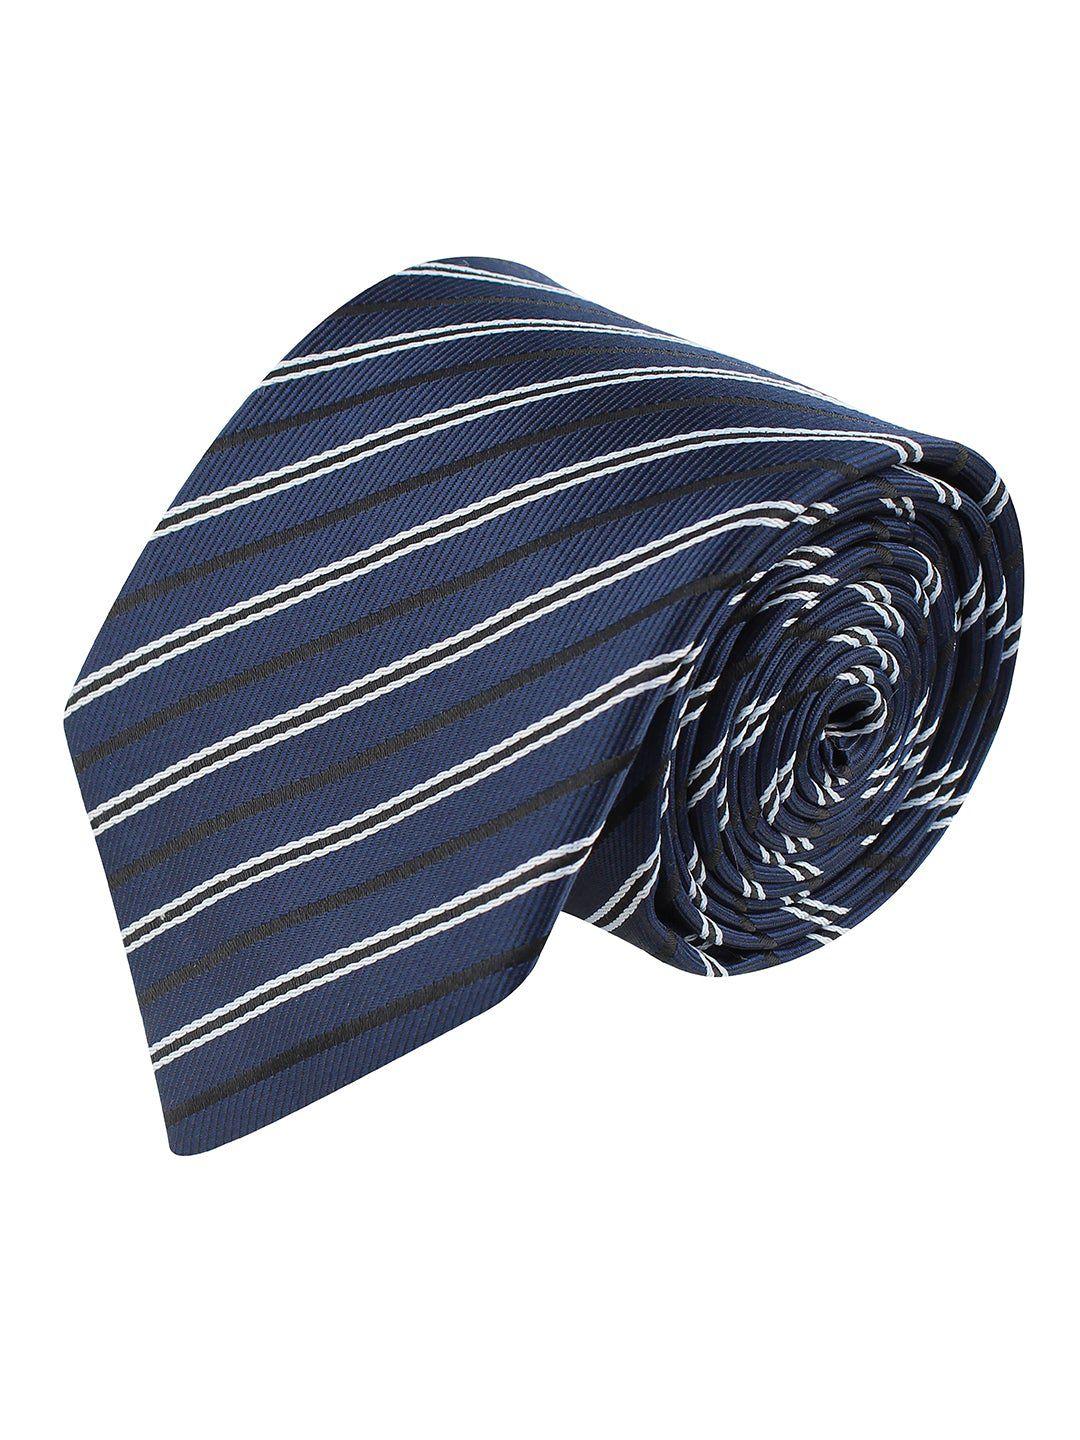 kovove men navy blue & white striped broad tie